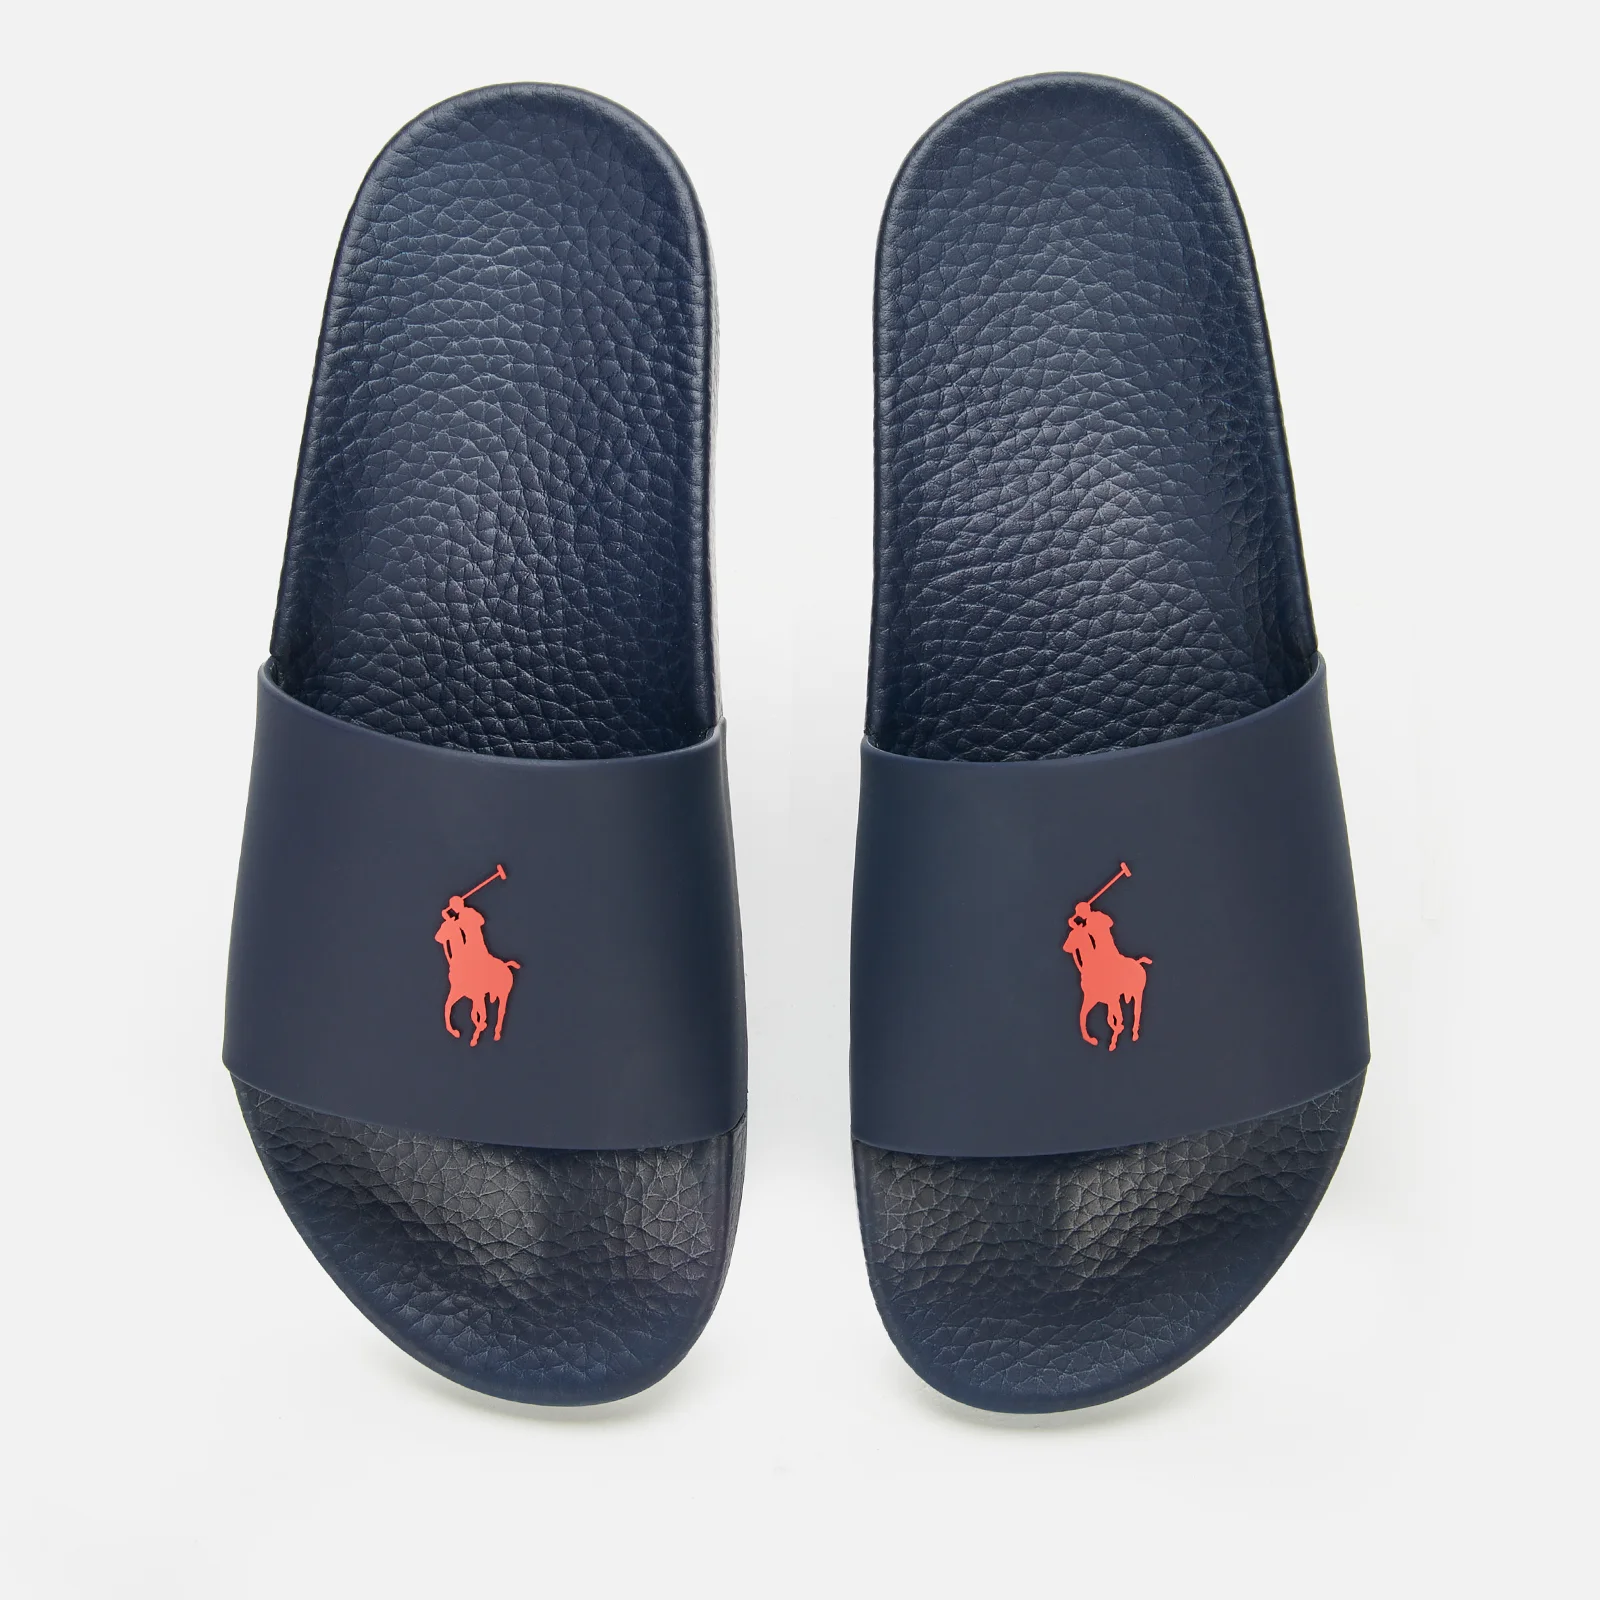 Polo Ralph Lauren Men's Slide Sandals - Navy/Red PP - UK 7 Image 1